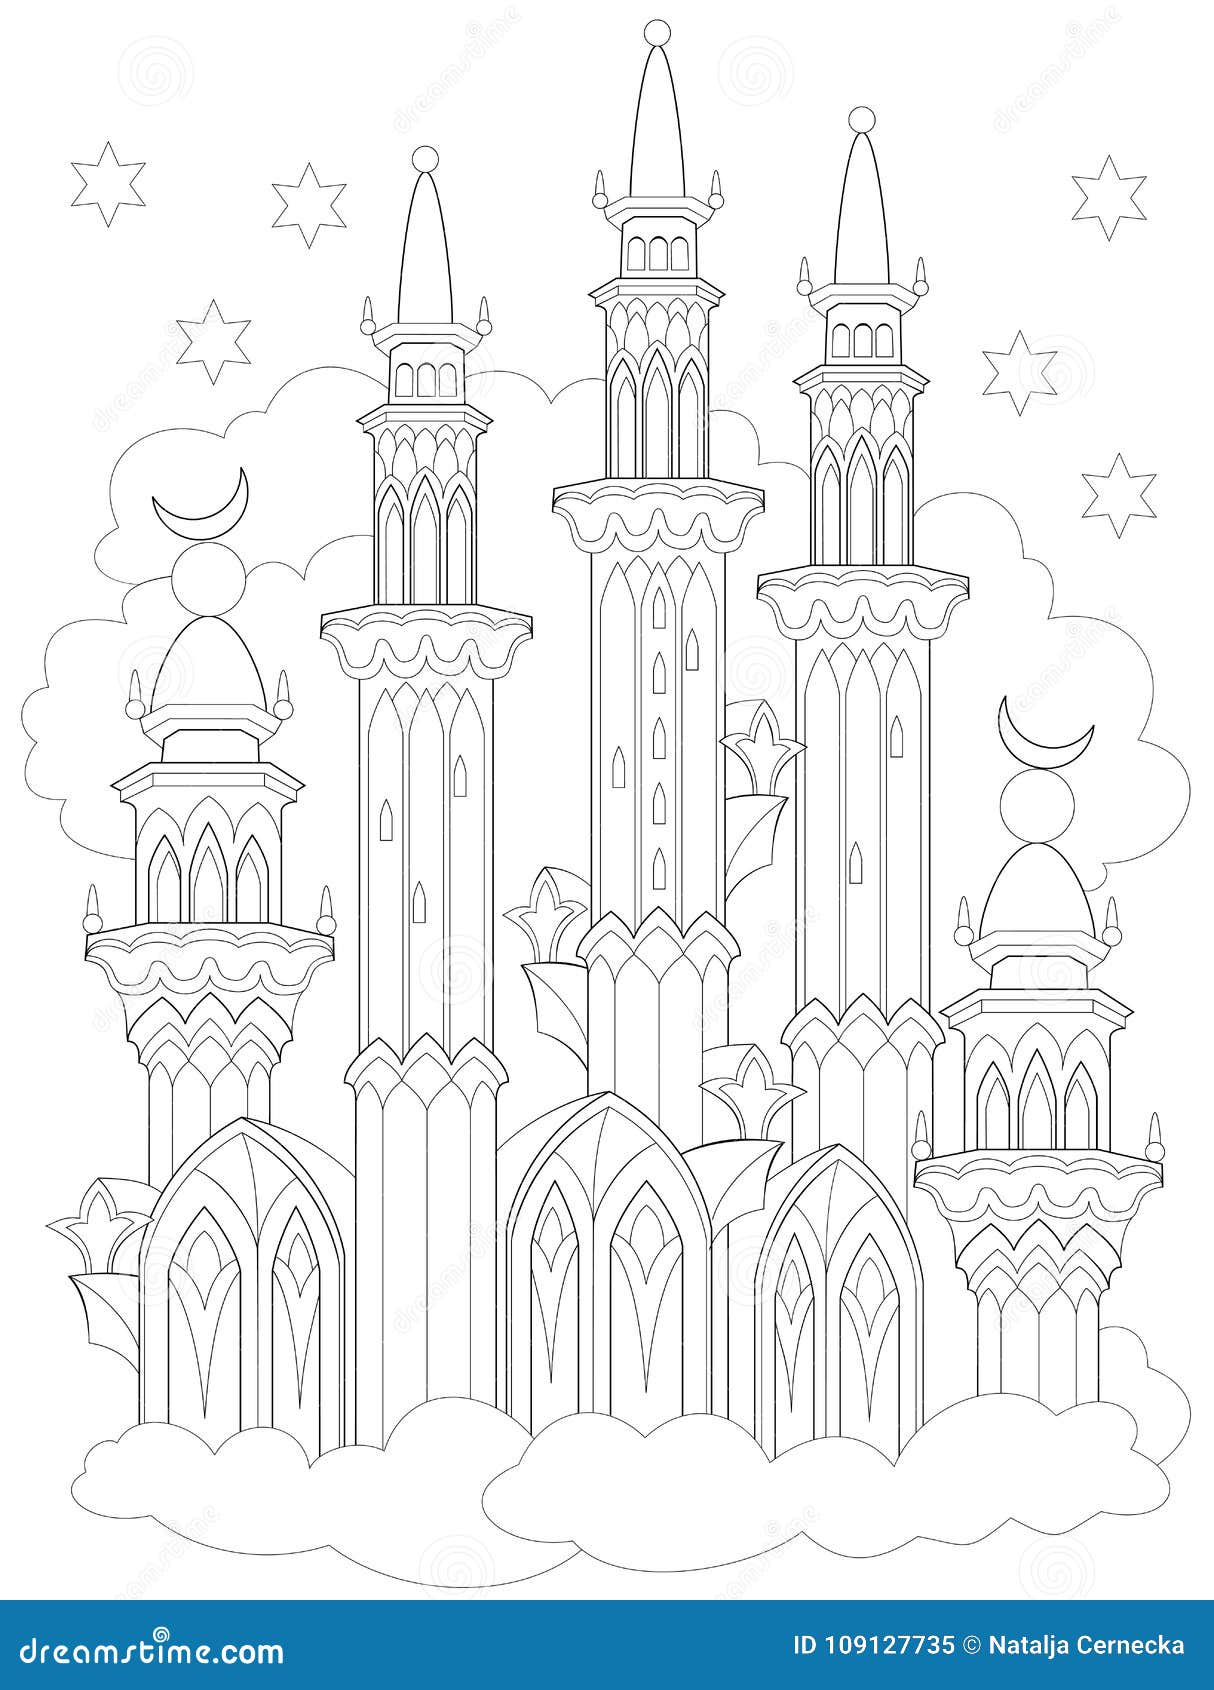 Pagina in bianco e nero per colorare Disegno di fantasia del castello arabo da una fiaba Foglio di lavoro per i bambini e gli adu